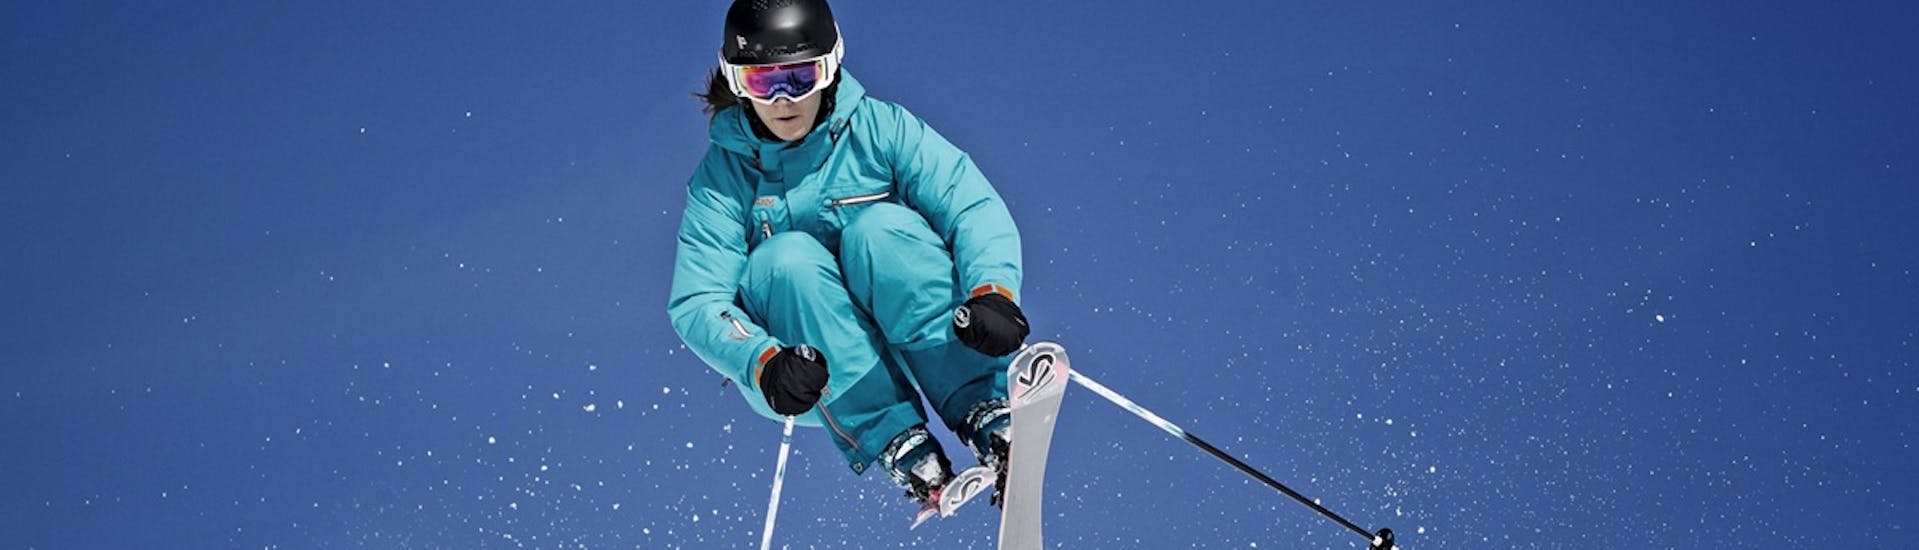 Privater Skikurs &quot;Ladies Special&quot; für alle Levels mit Skischule Snow Academy Monika Berwein - Hero image